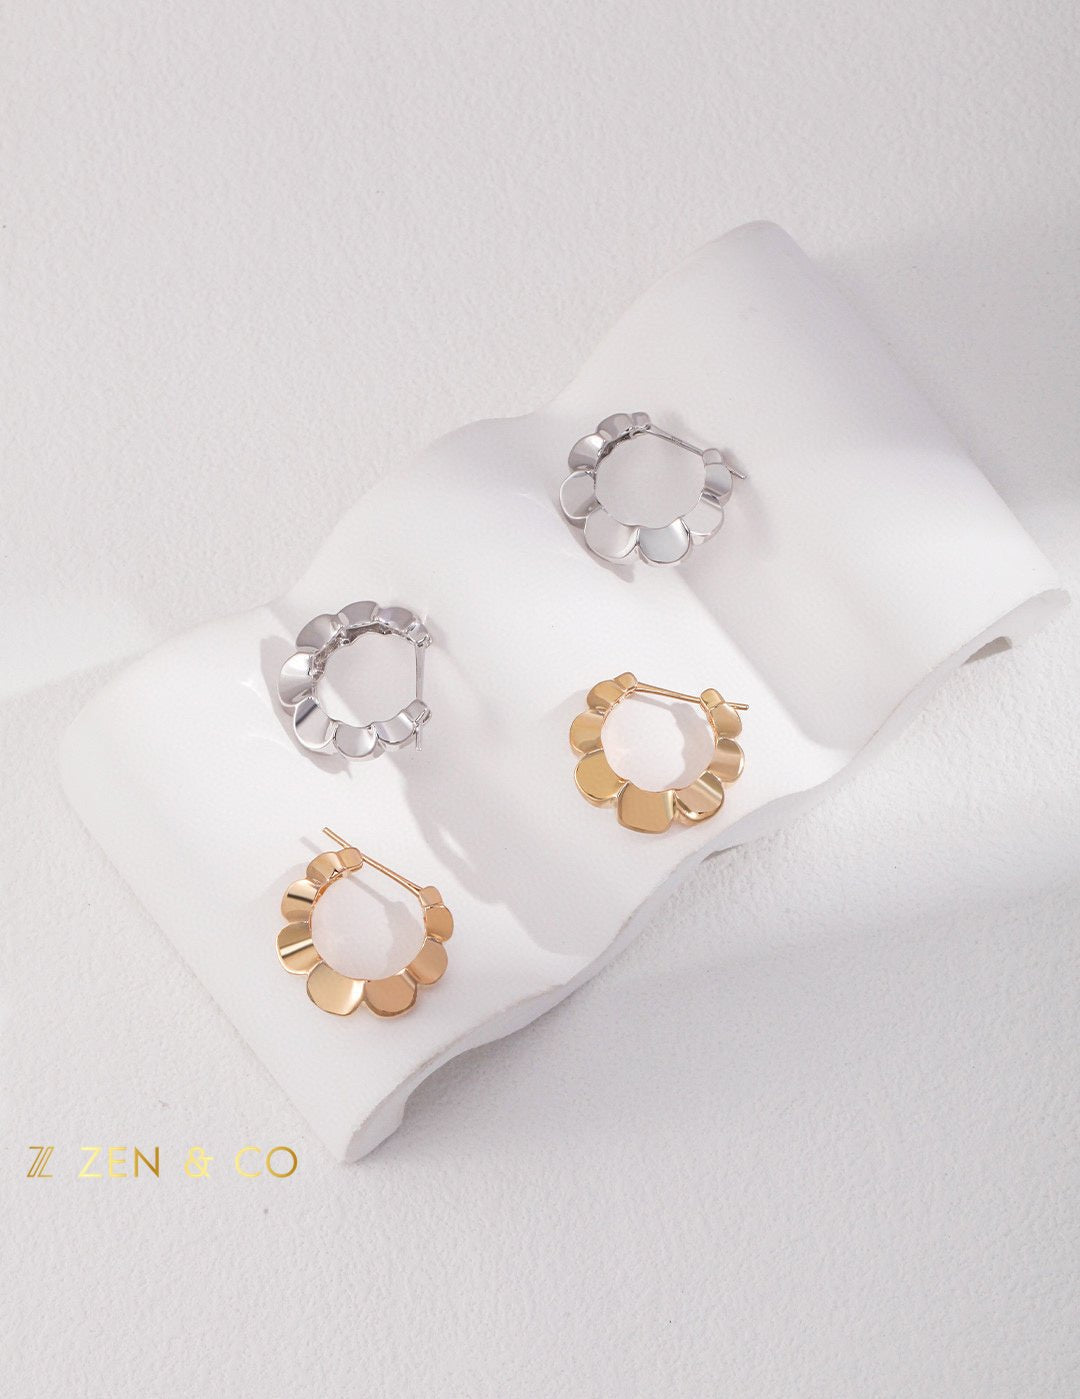 LIV Minimalist hoop earrings - ZEN&CO Studio